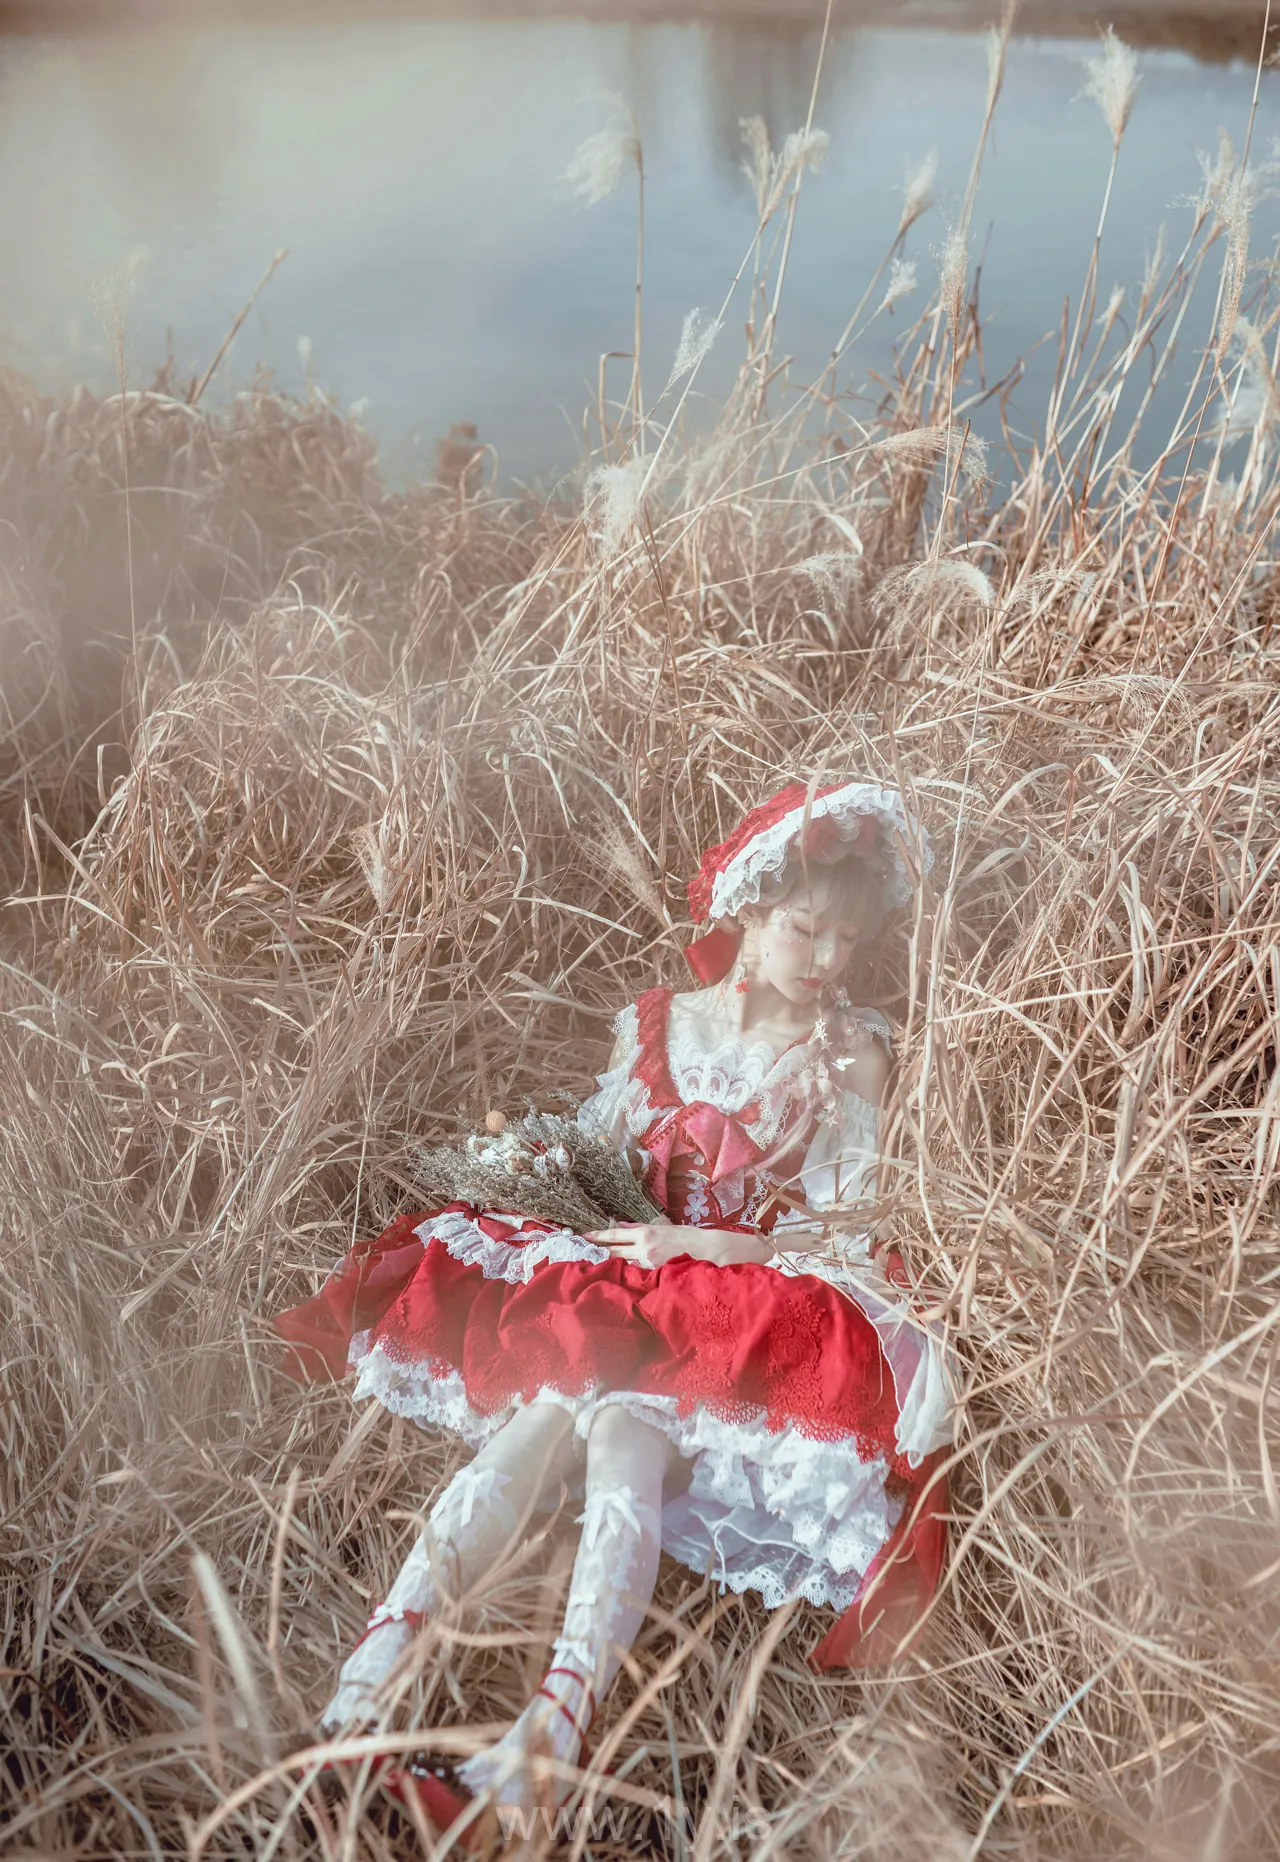 阿包也是兔娘 NO.05 lolita红裙